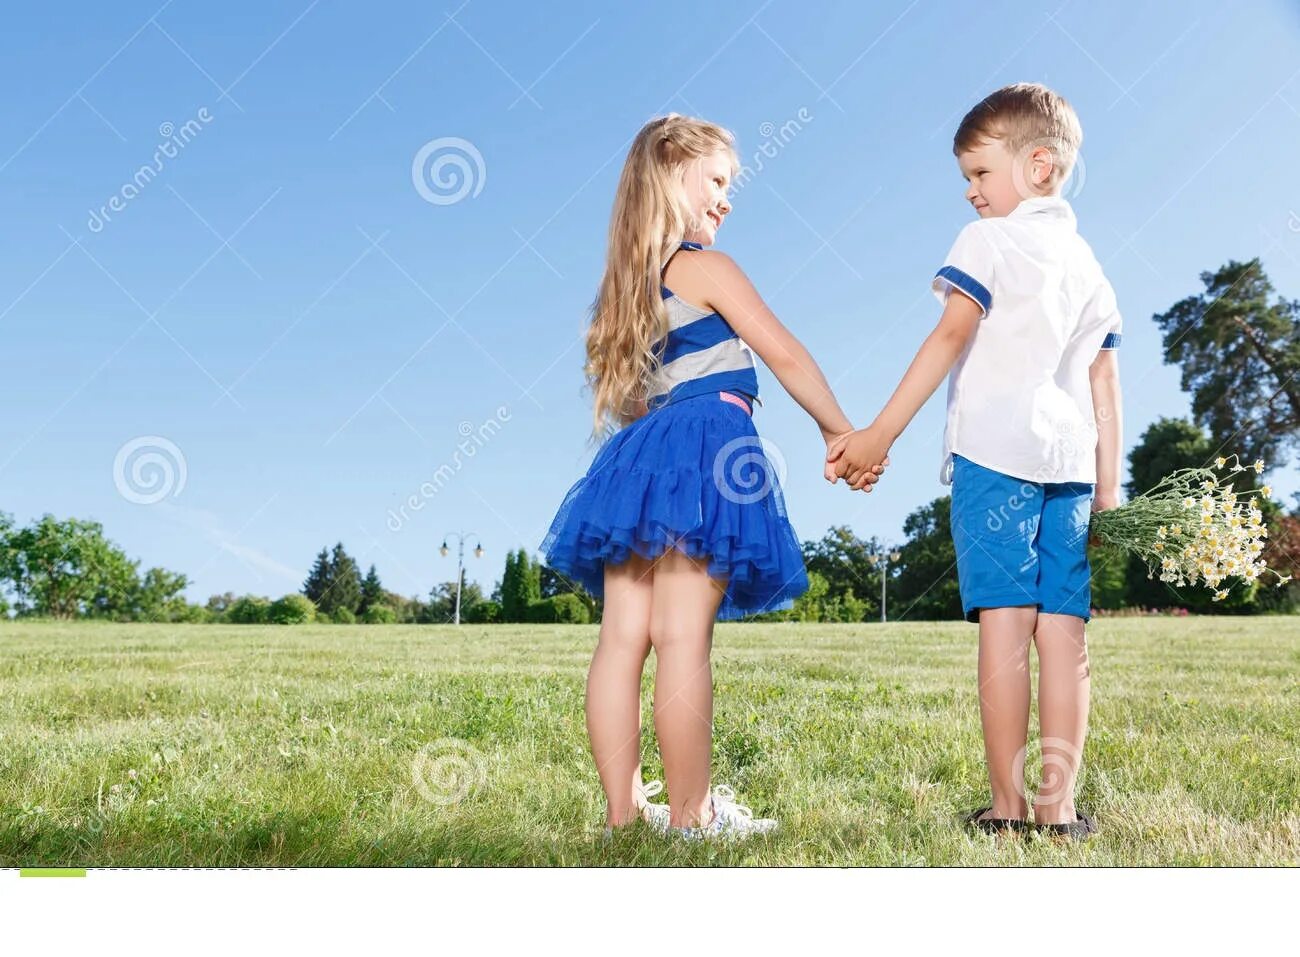 Мальчики имеют друг друга. Дети держатся за руки. Мальчик и девочка держатся за руки. Школьник и дошкольник взялись за руки. Школьники держатся за руки.